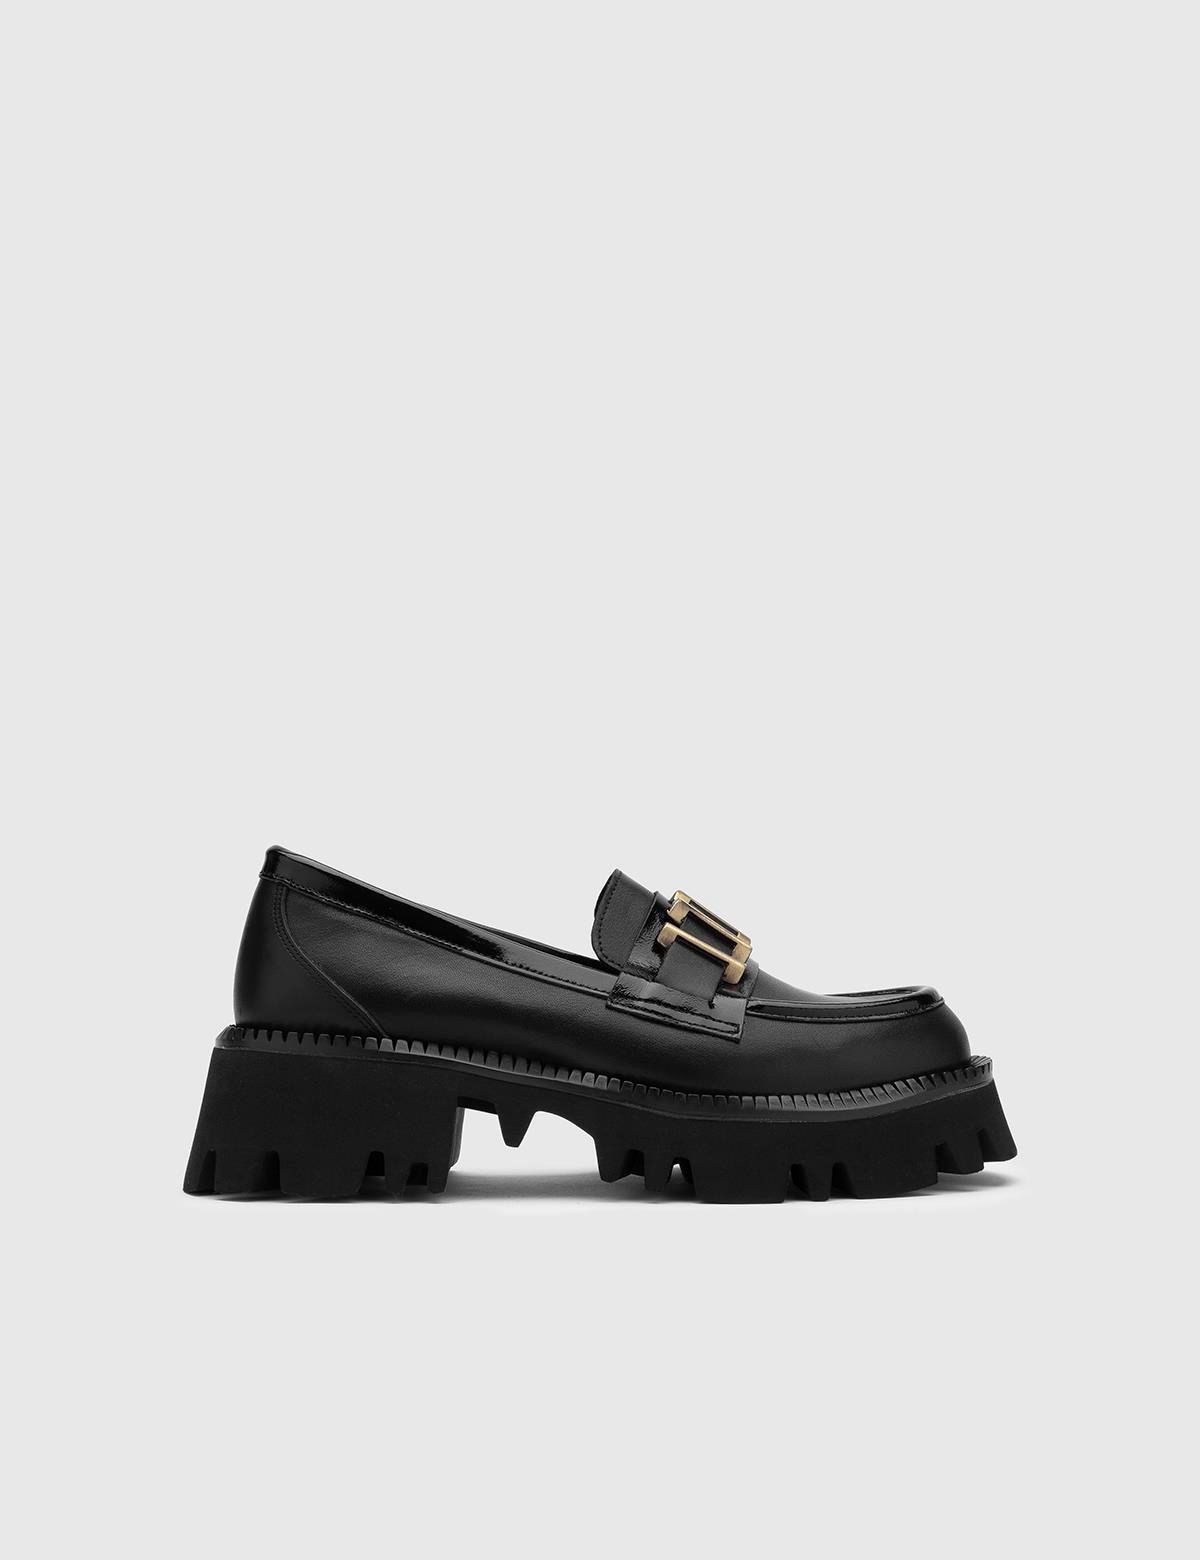 Anto Damen-Loafer aus schwarzem Lackleder